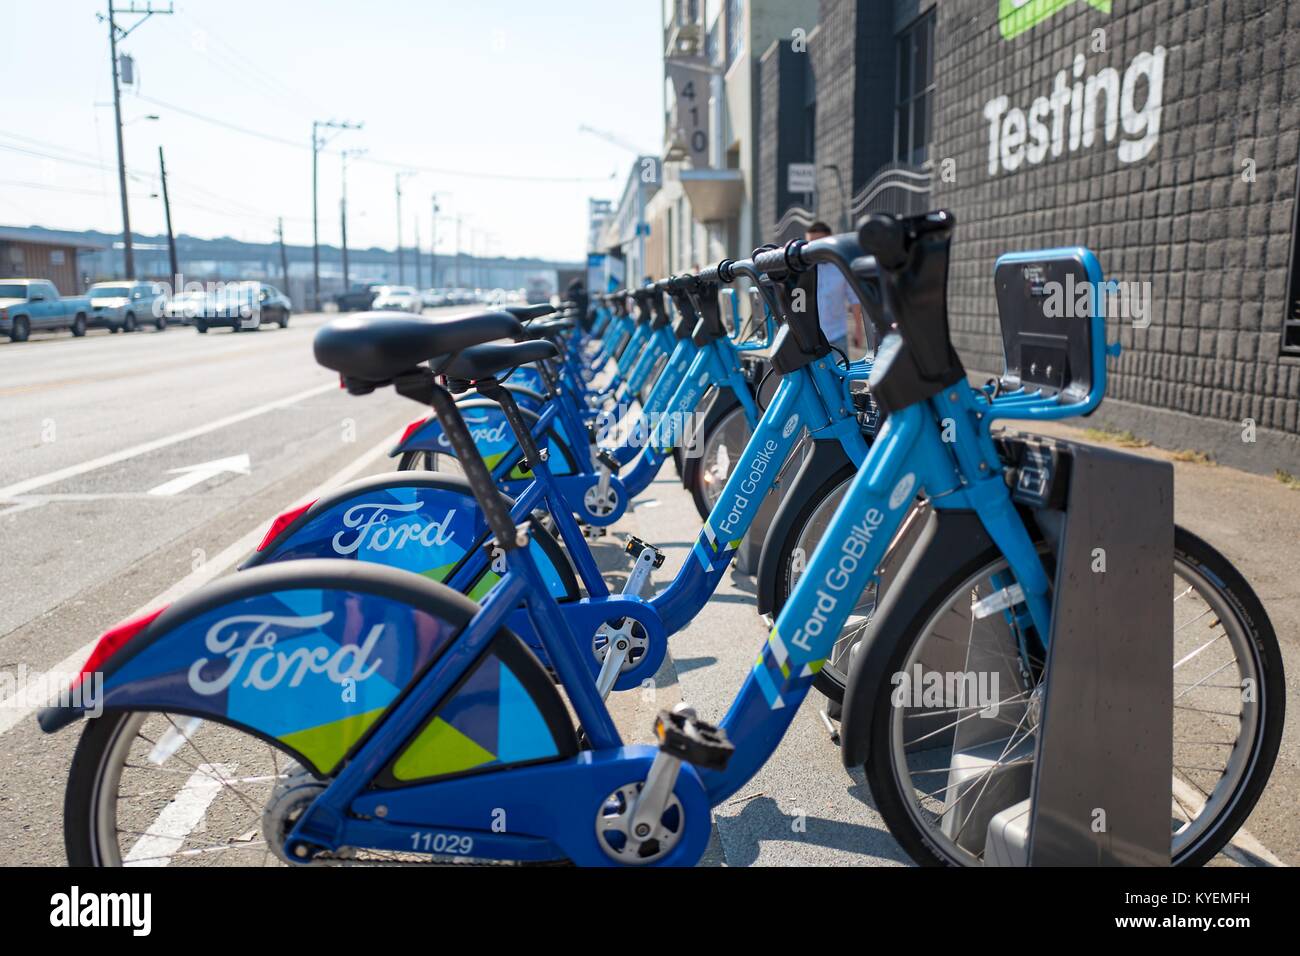 Porte-vélo rempli de Ford GoBike location court terme utilisé pour le transport des vélos, dans des environnements urbains, dans le South of Market (SoMa) quartier de San Francisco, Californie, 13 octobre 2017. () Banque D'Images